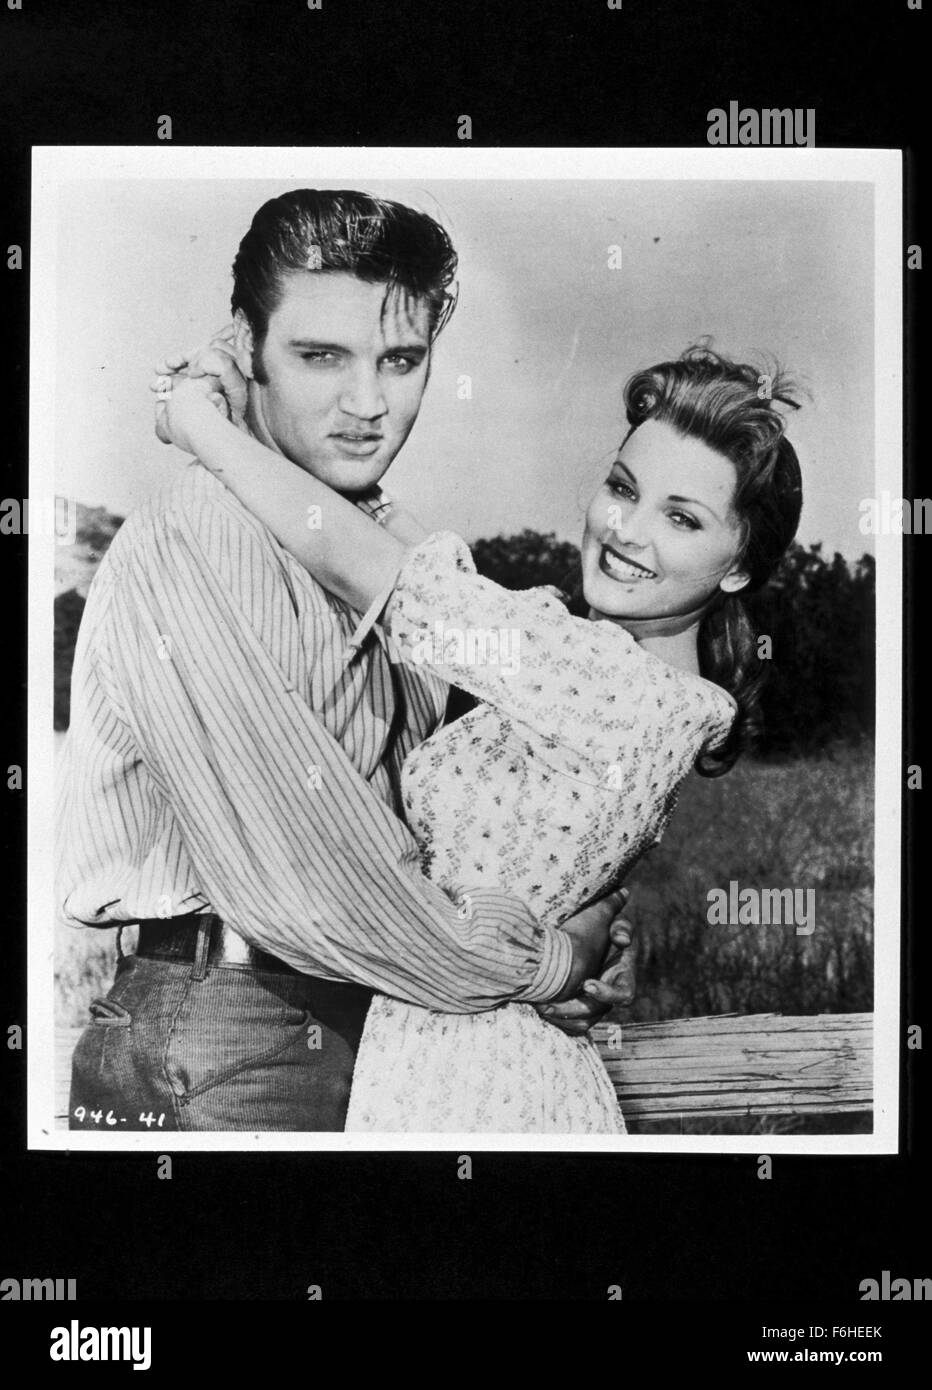 1956, il titolo del film: LOVE ME TENDER, REGISTA: ROBERT D WEBB, Studio: volpe, nella foto: DEBRA PAGET, ELVIS PRESLEY. (Credito Immagine: SNAP) Foto Stock